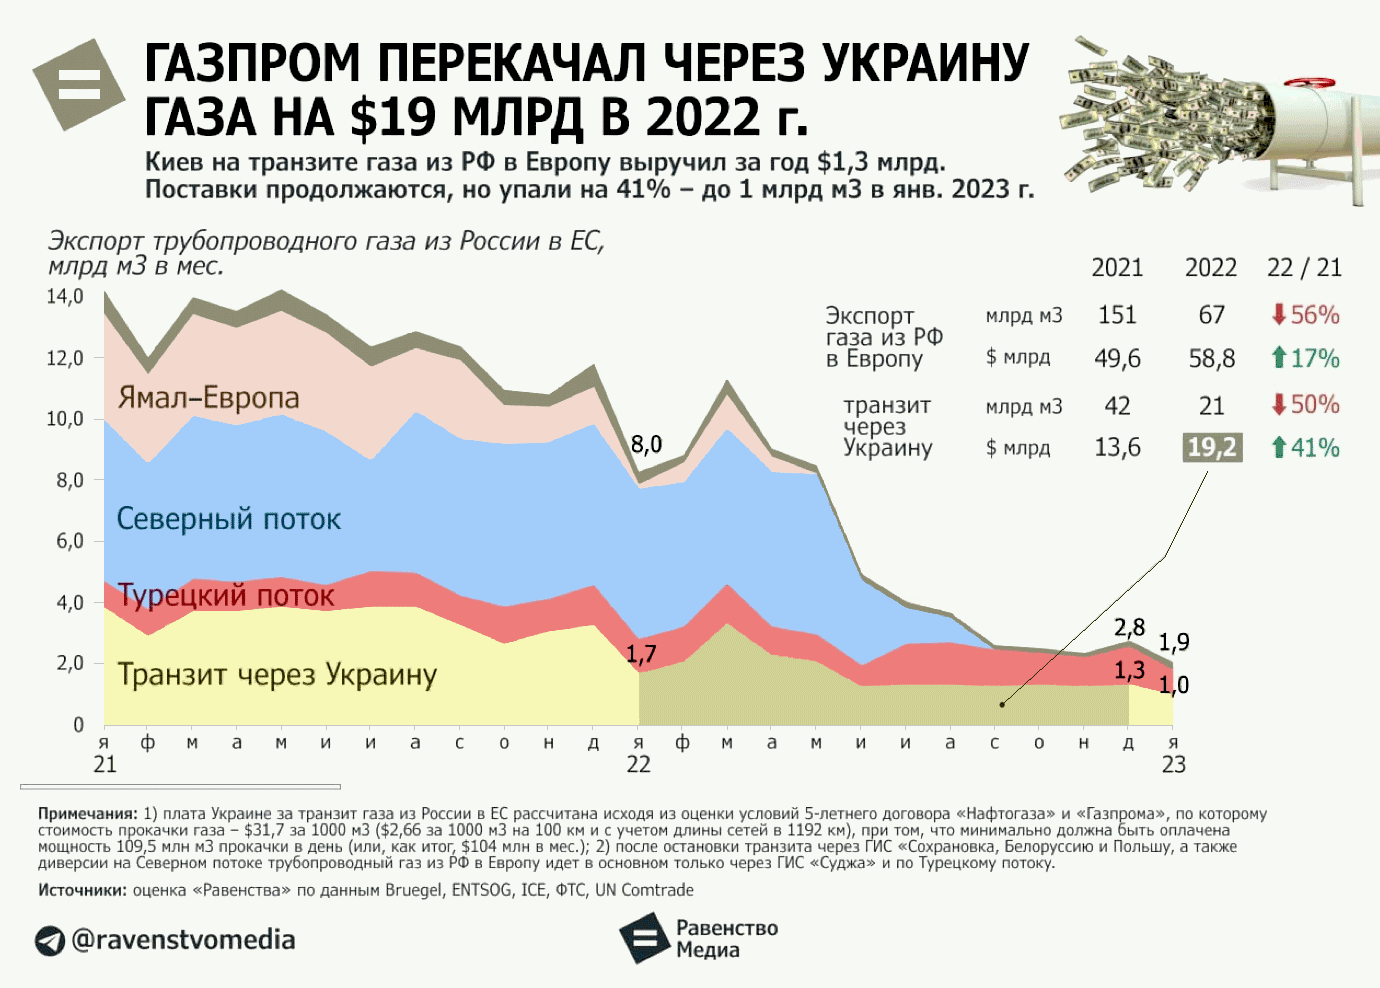 ГАЗПРОМ в 2022 году перекачал газа транзитом через Украину на $19 млрд.